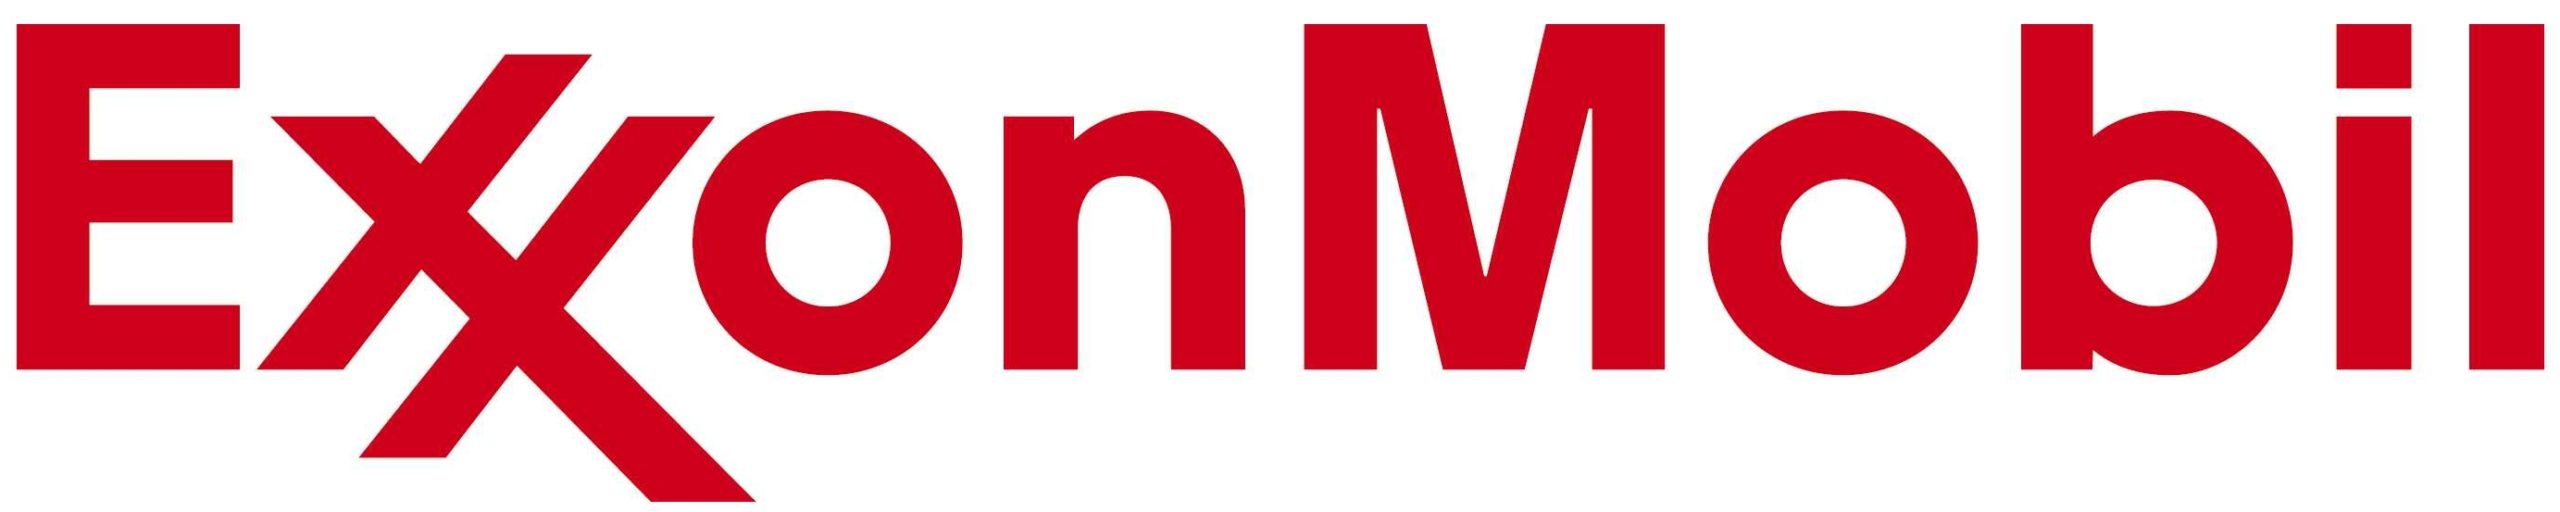 Logo ExxonMobil scaled GHWCC | Greater Houston Women's Chamber of Commerce